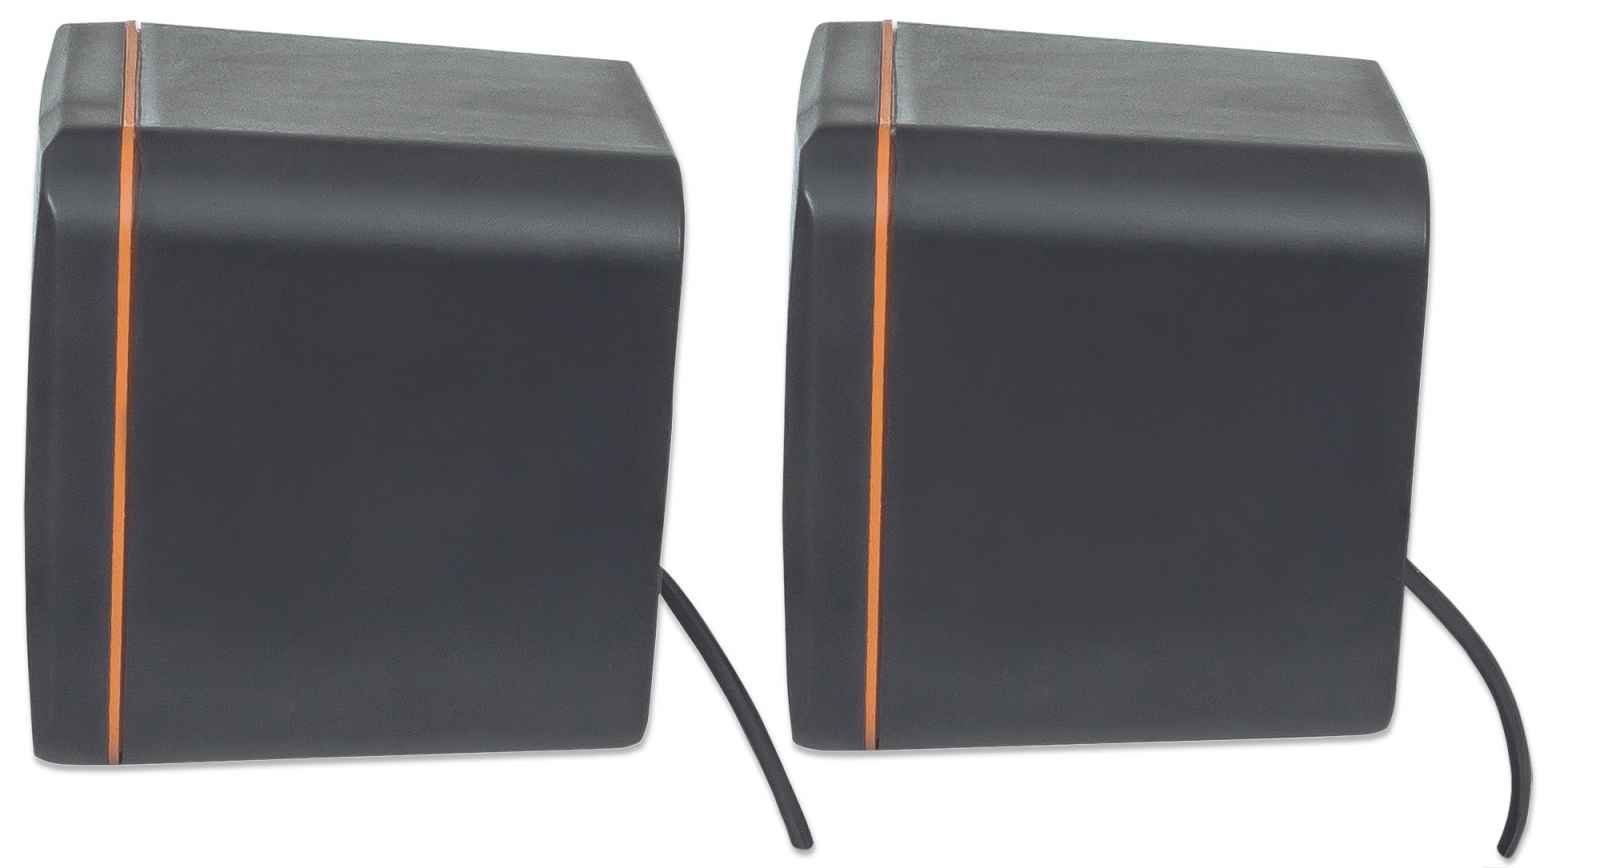 Manhattan Sistema de altavoces estéreo alimentados por USB, tamaño pequeño,  con control de volumen y enchufe de audio de 0.138 in para conectar a